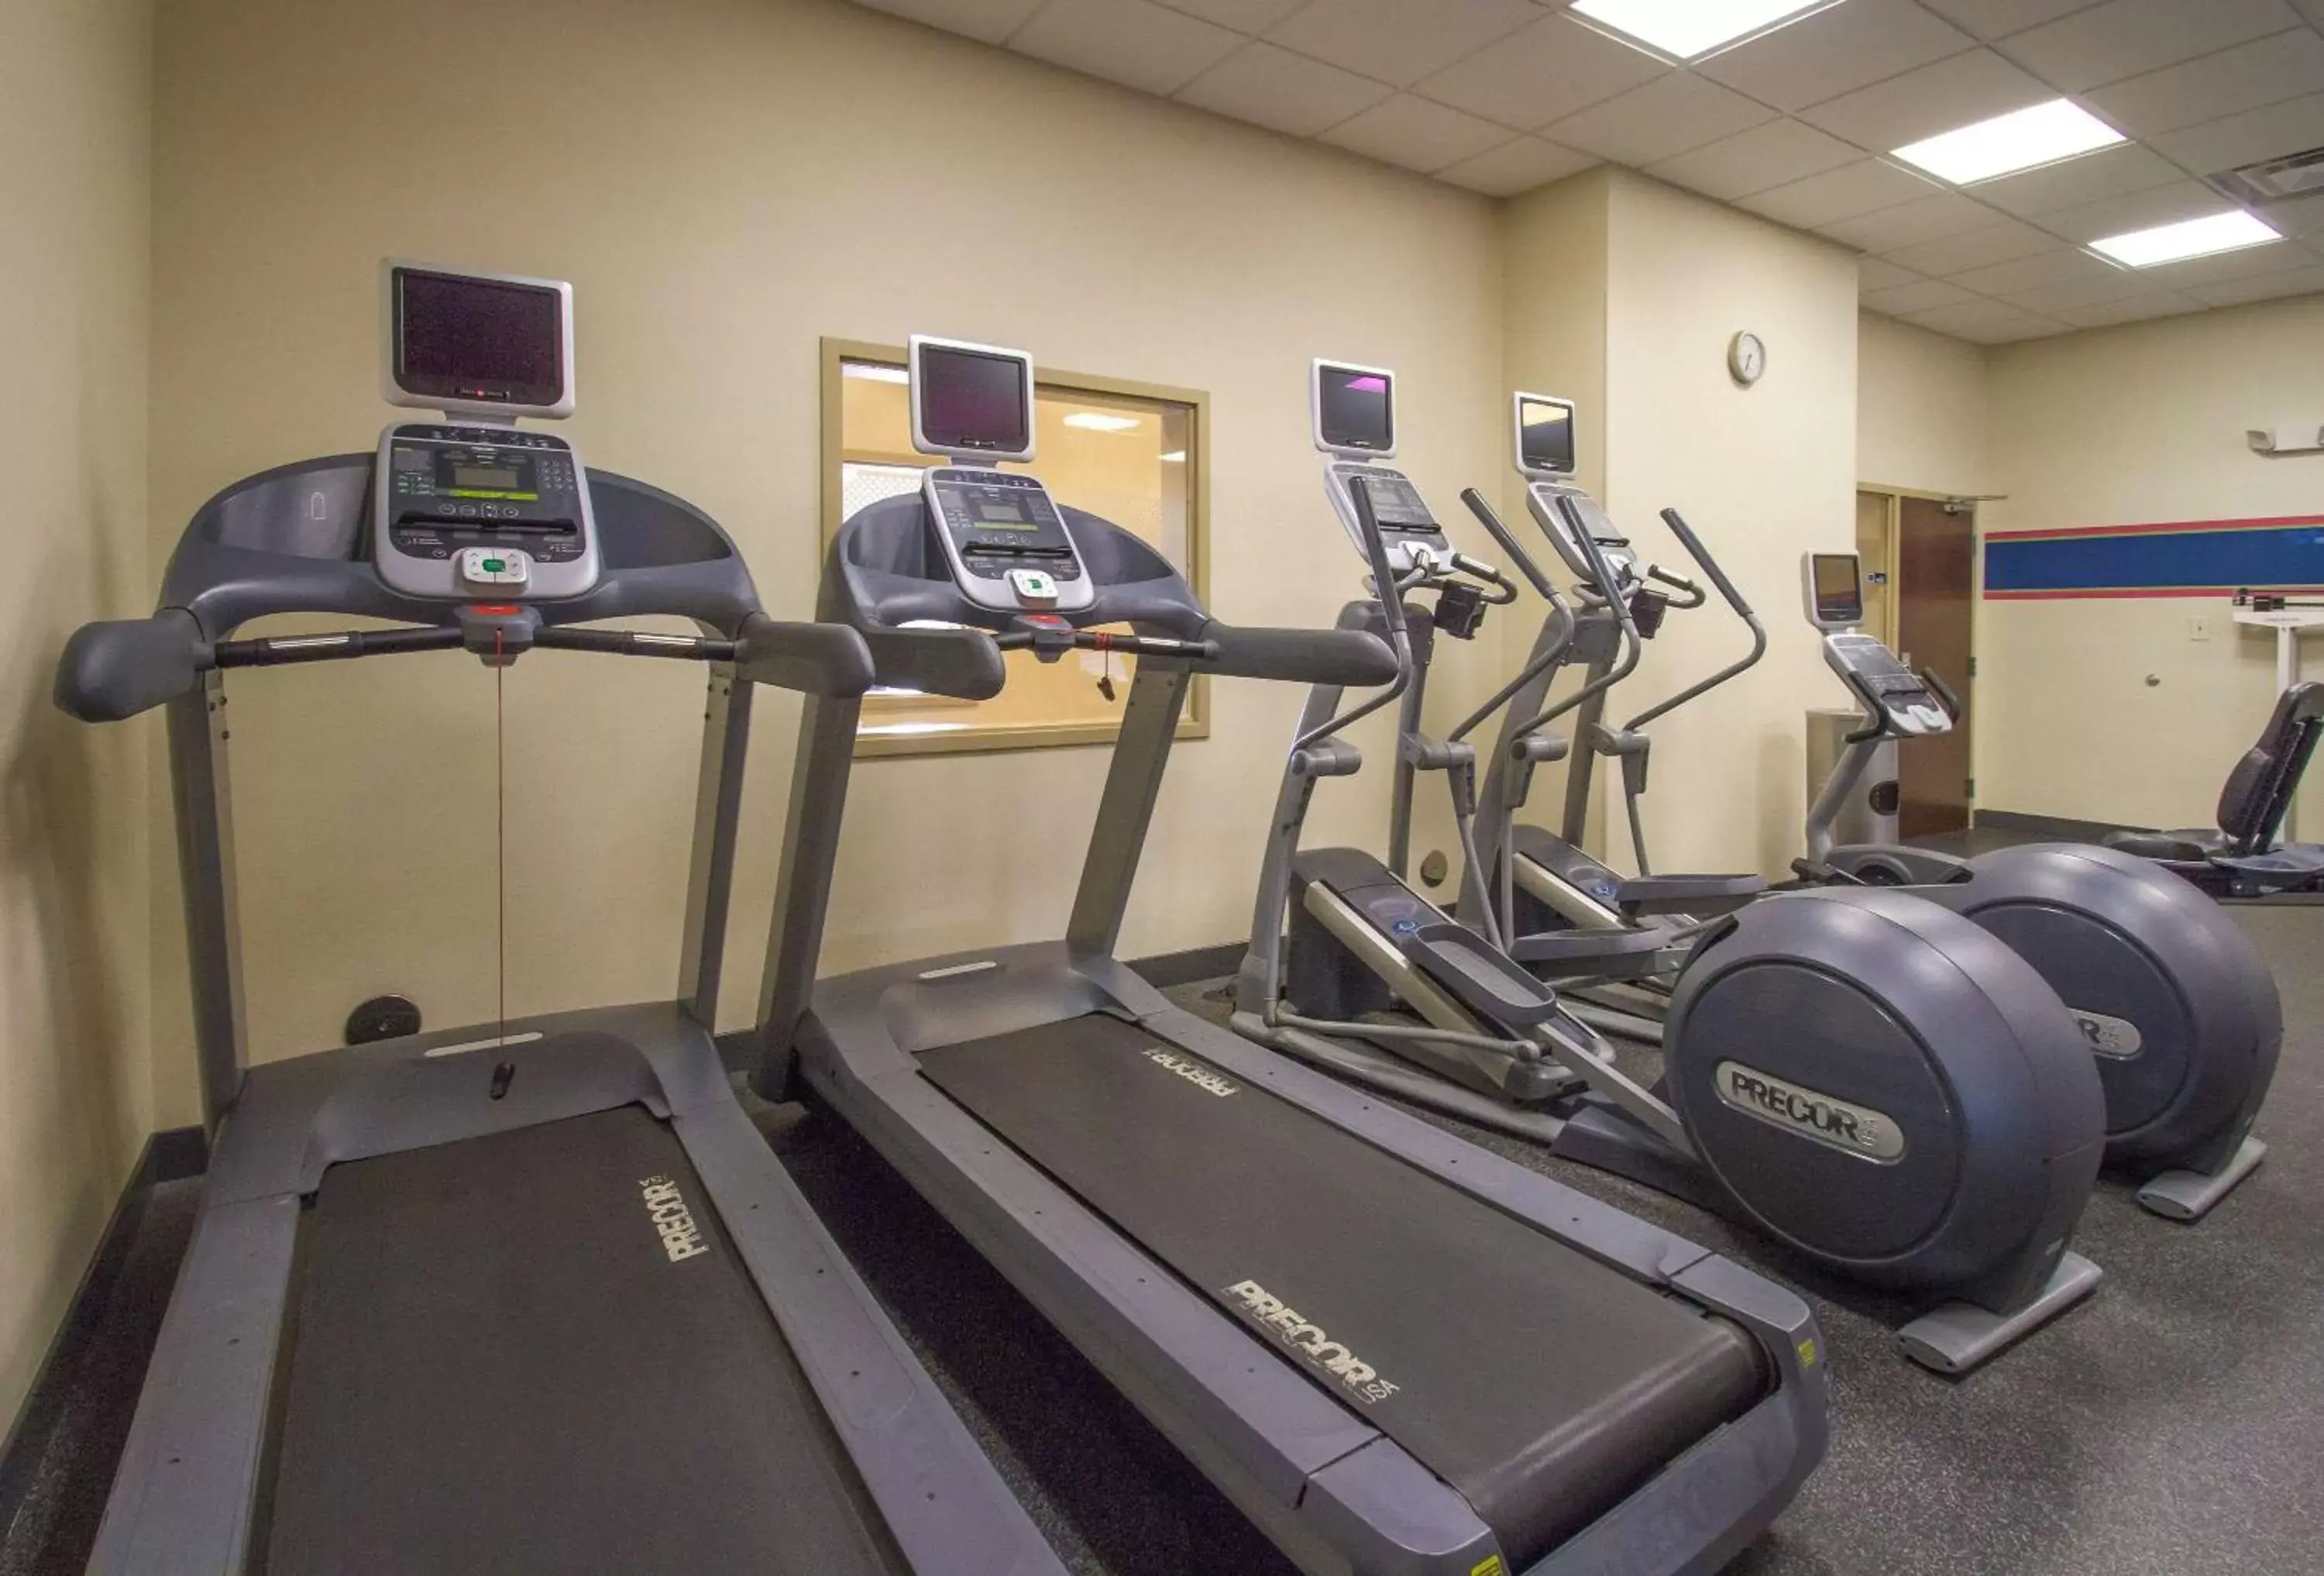 Fitness centre/facilities, Fitness Center/Facilities in Hampton Inn Greenville